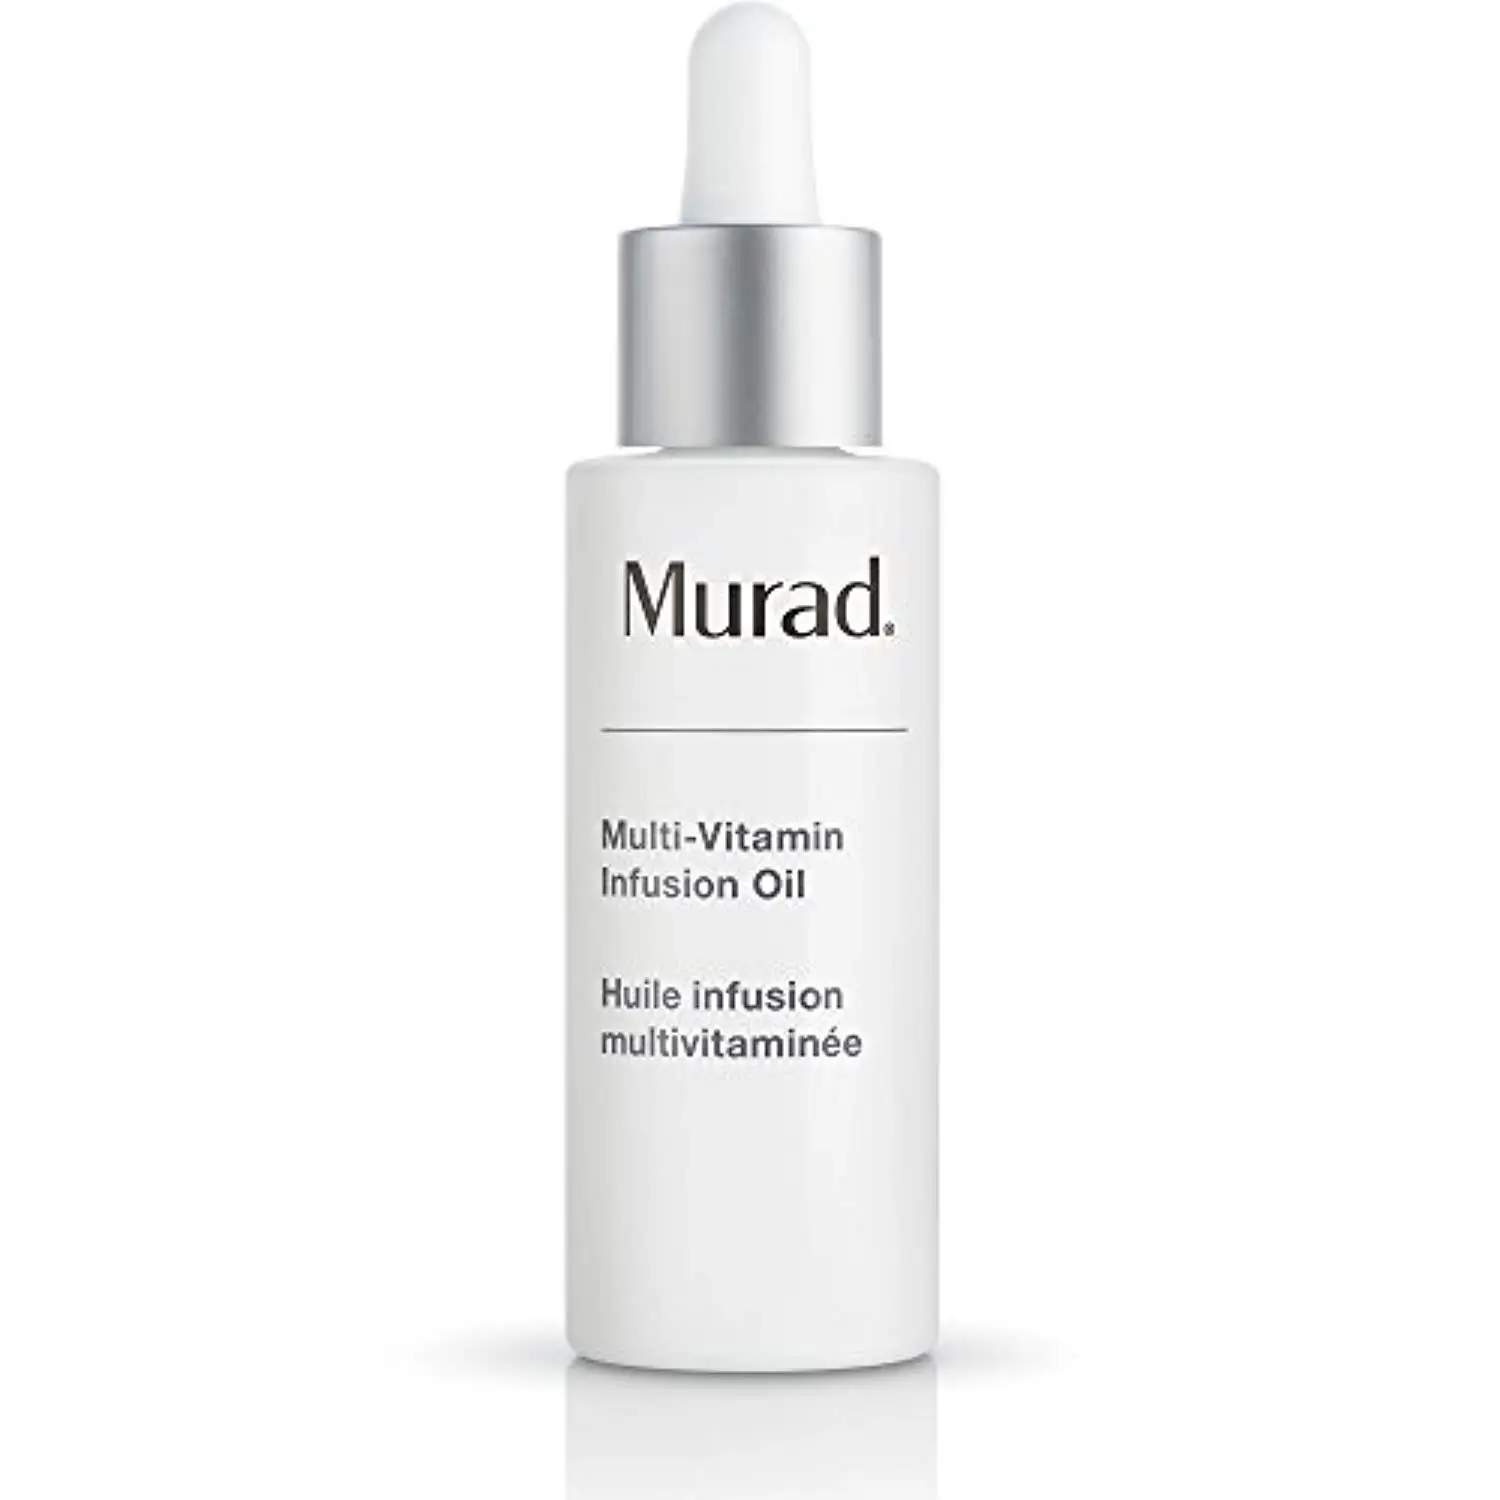 

Murad Multi-Vitamin Infusion Oil - (1.0 fl oz)